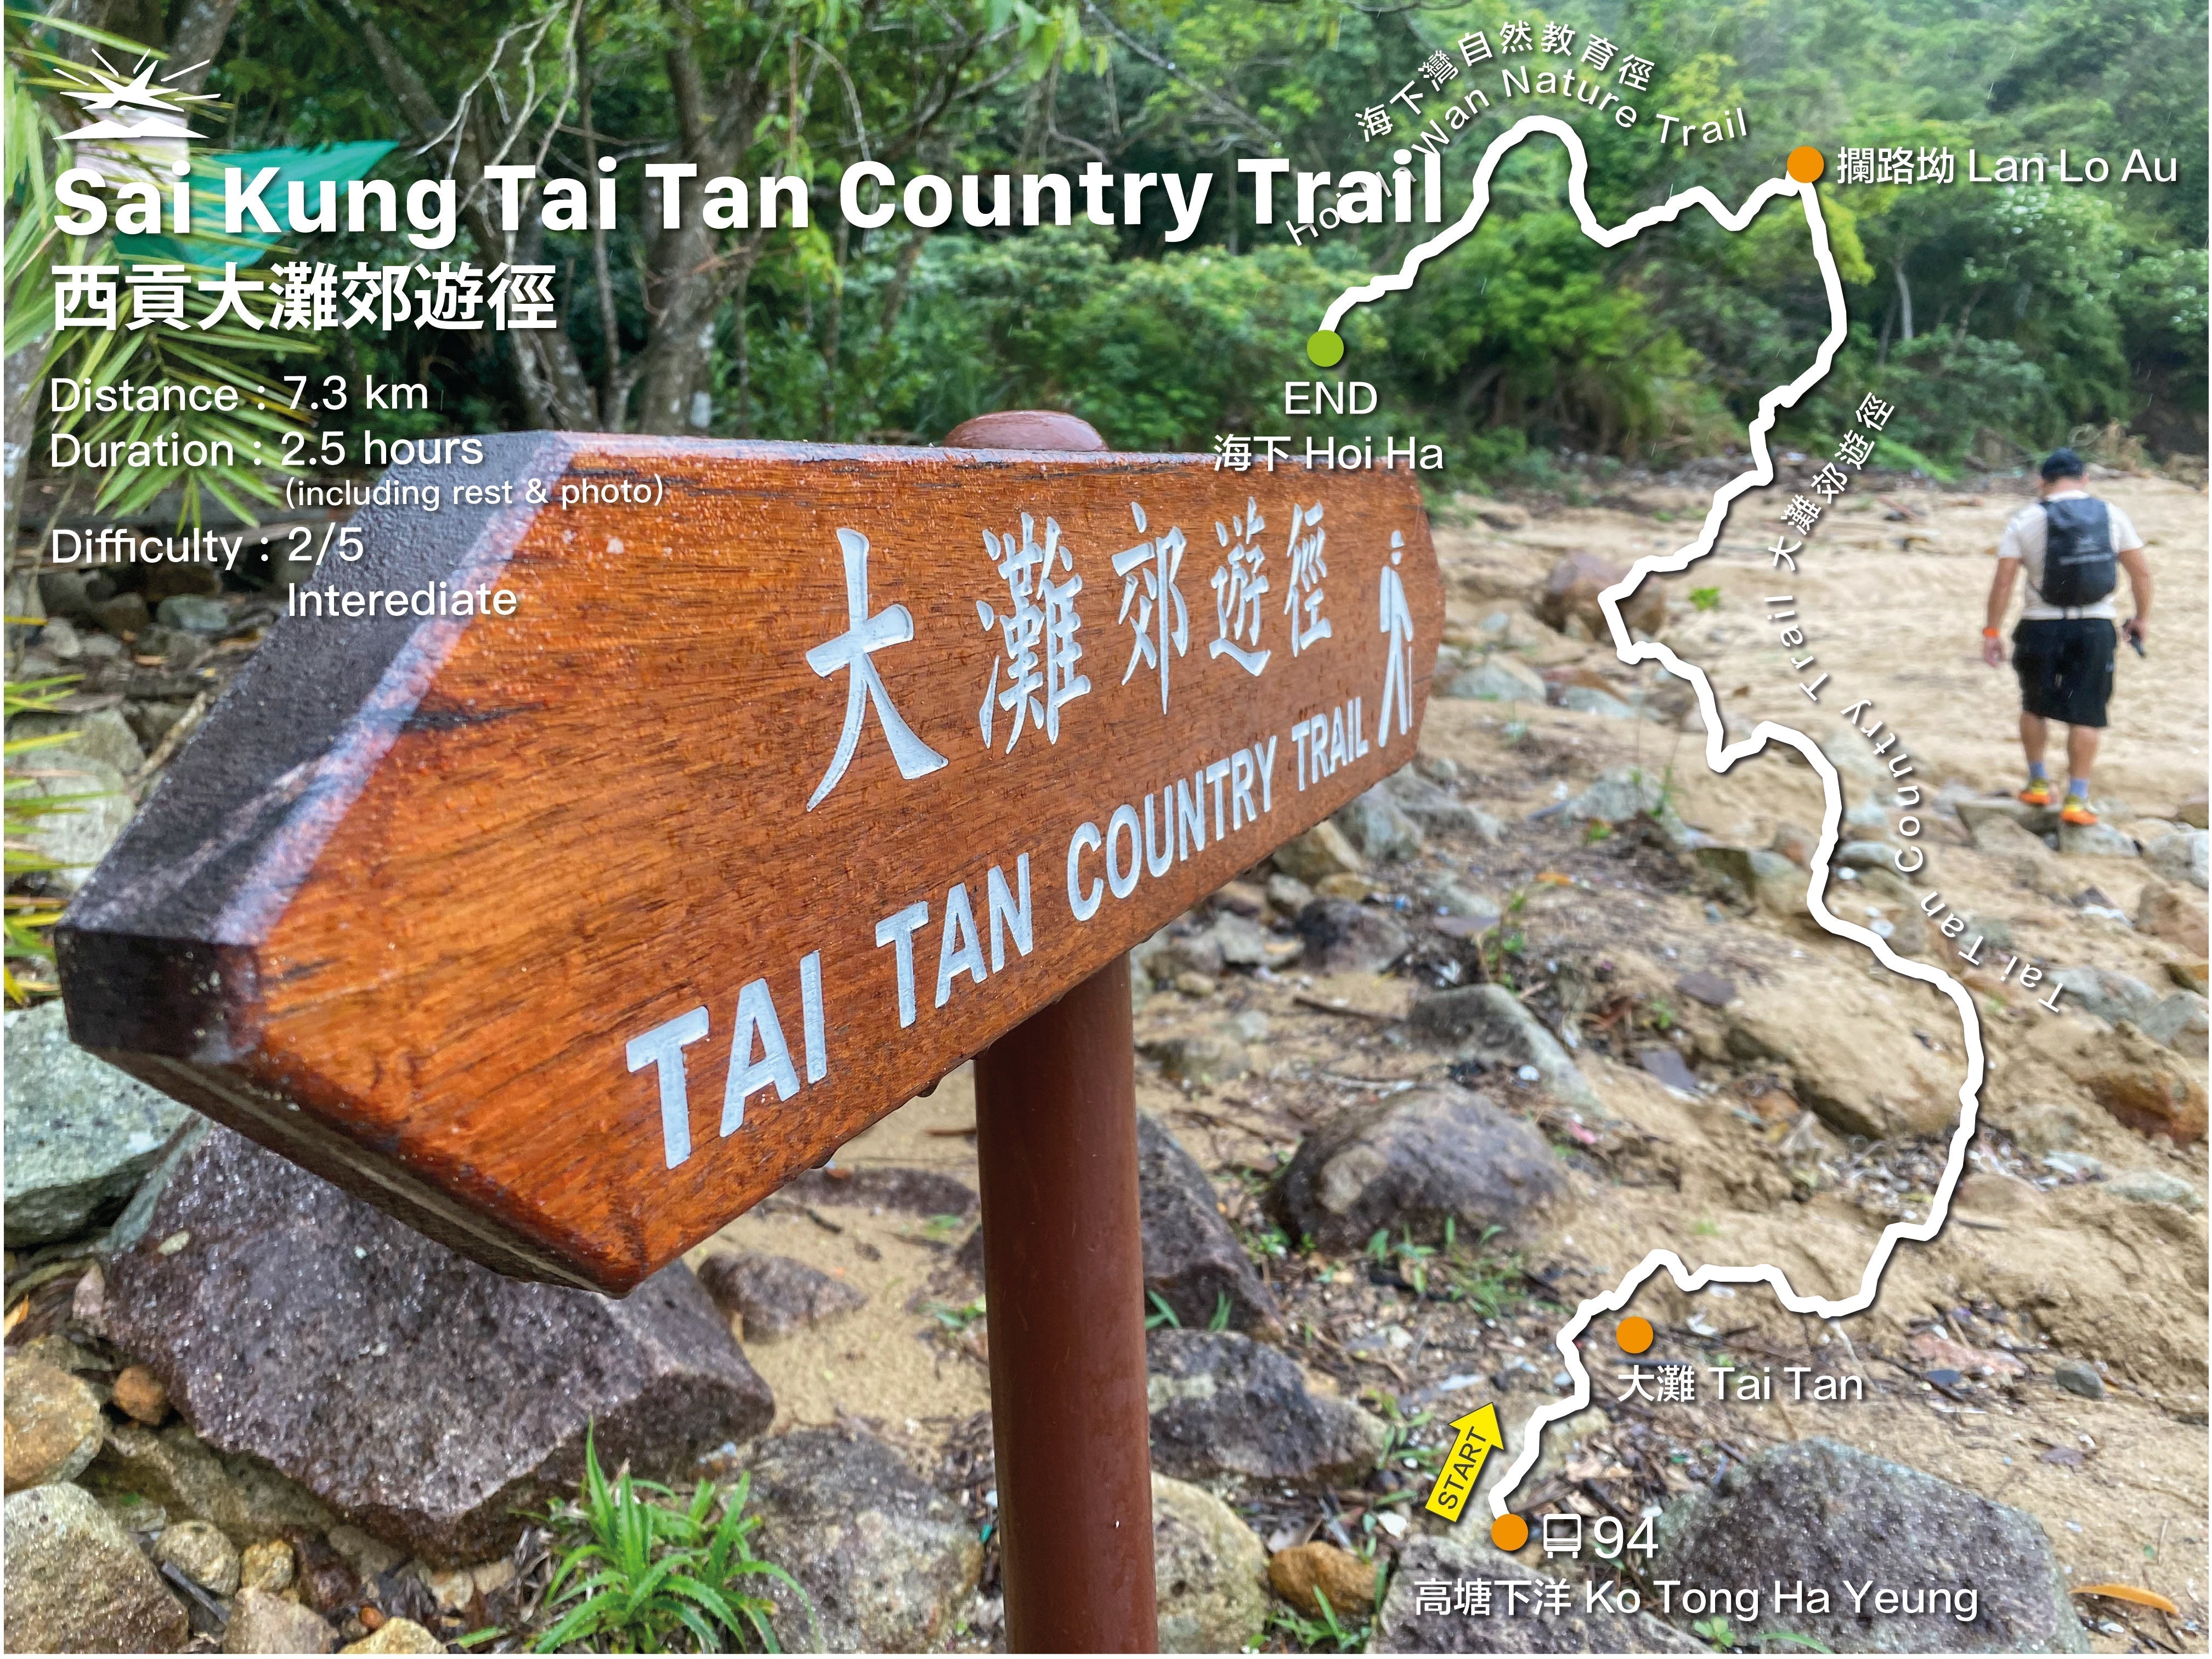 Sai Kung Tai Tan Country Trail to Hoi Ha